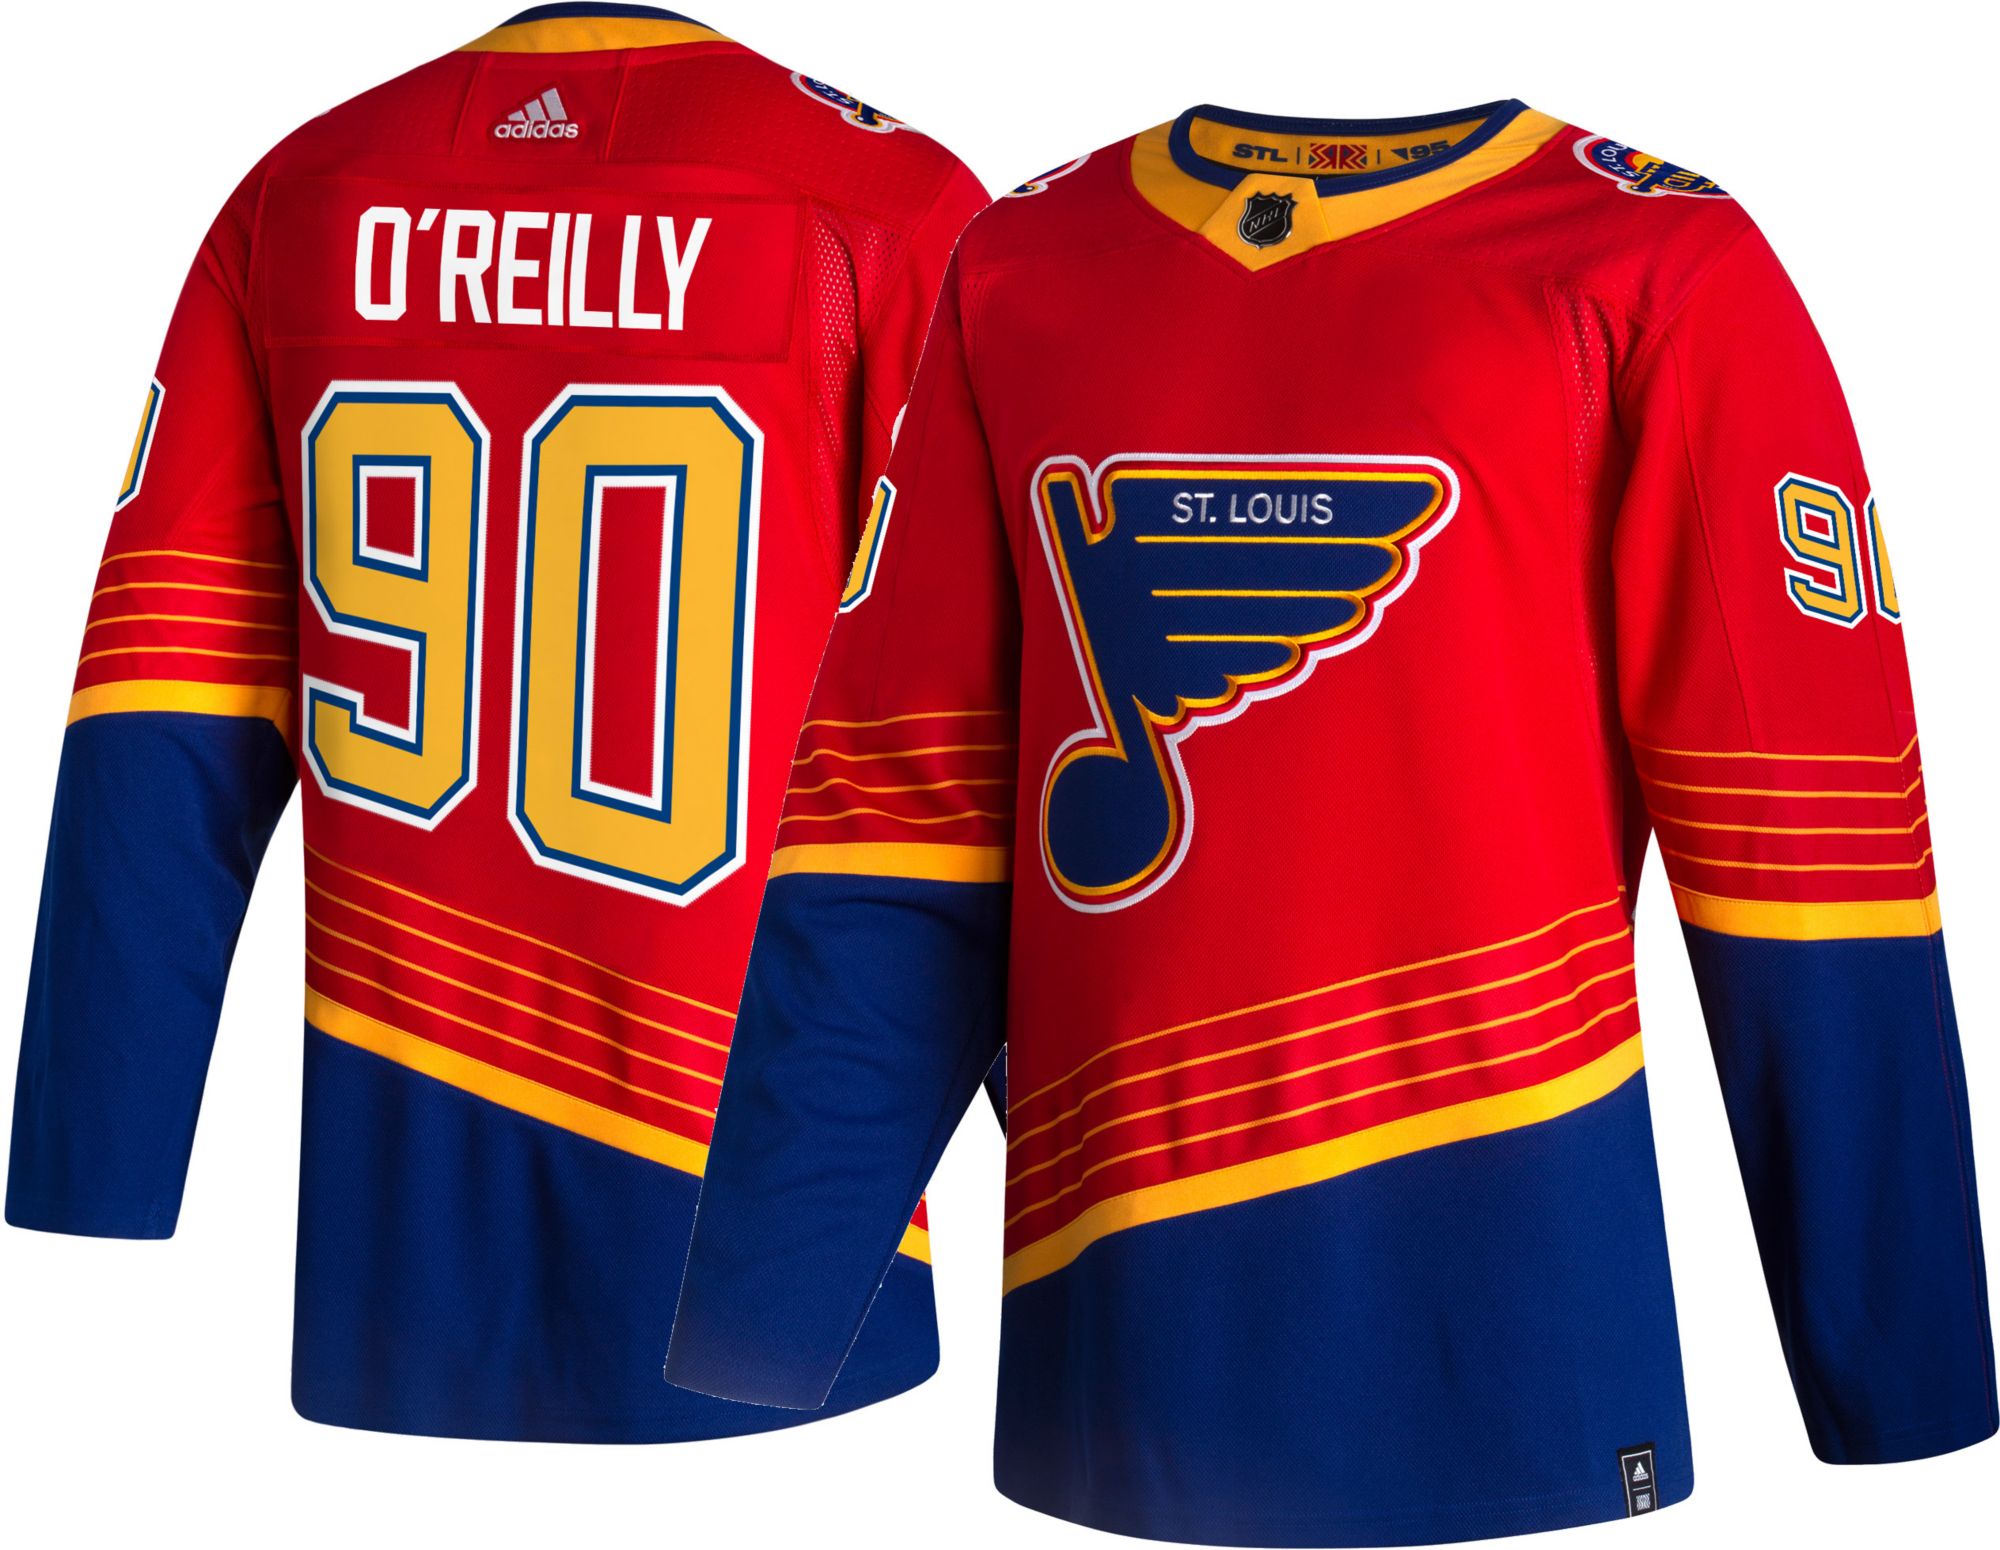 Cardinal Apparel, Shirts, St Louis Cardinals Blues Hockey Jersey